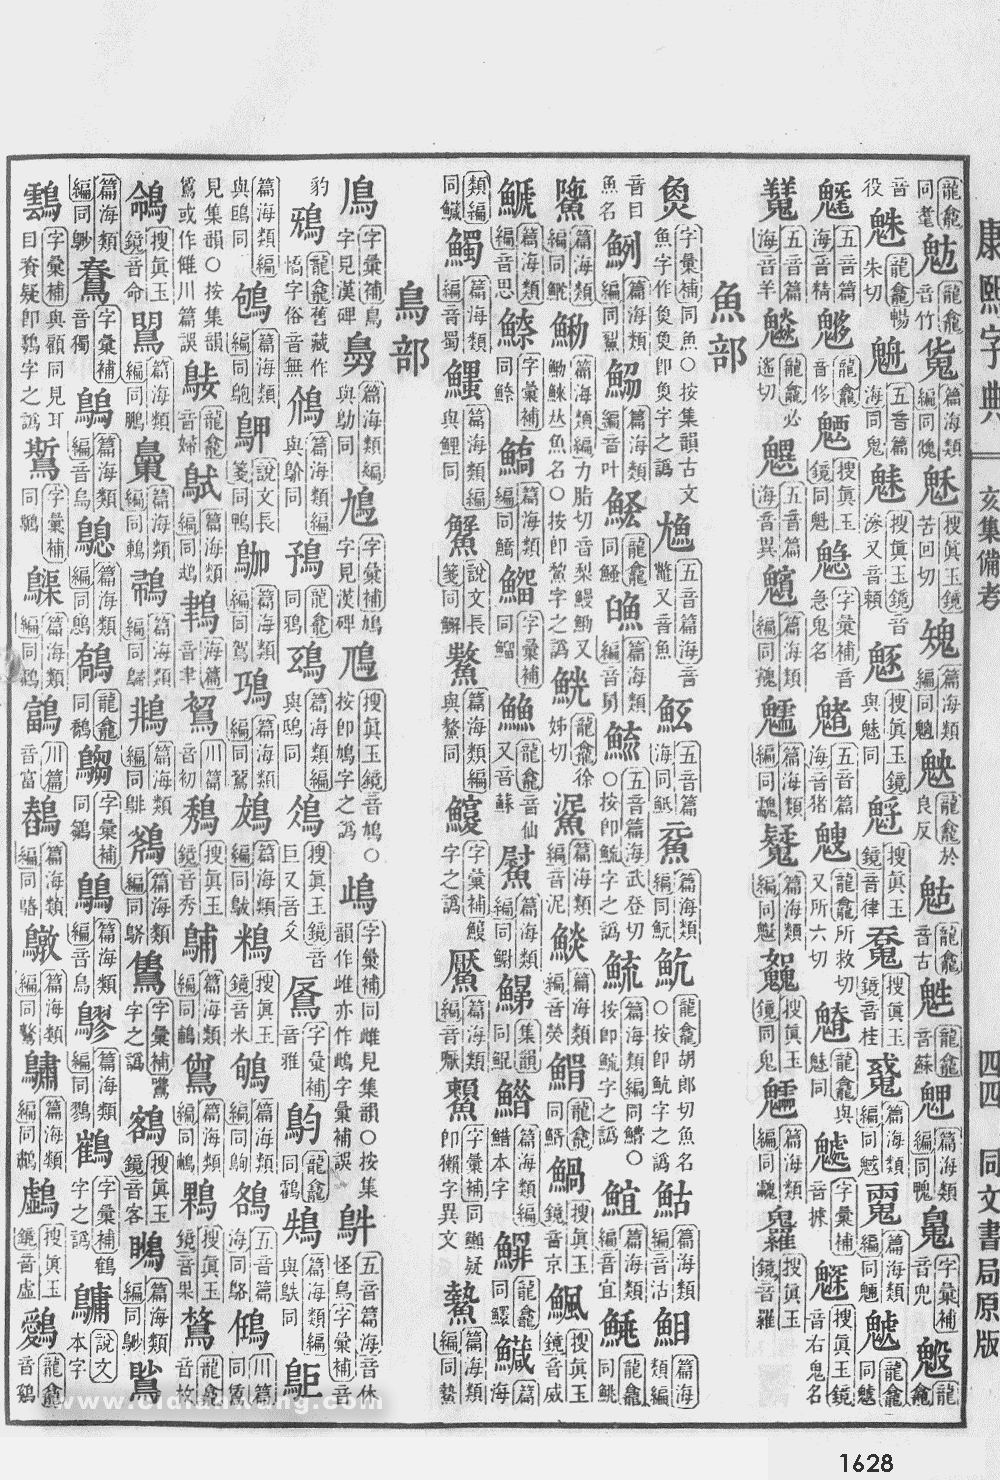 康熙字典掃描版第1628頁